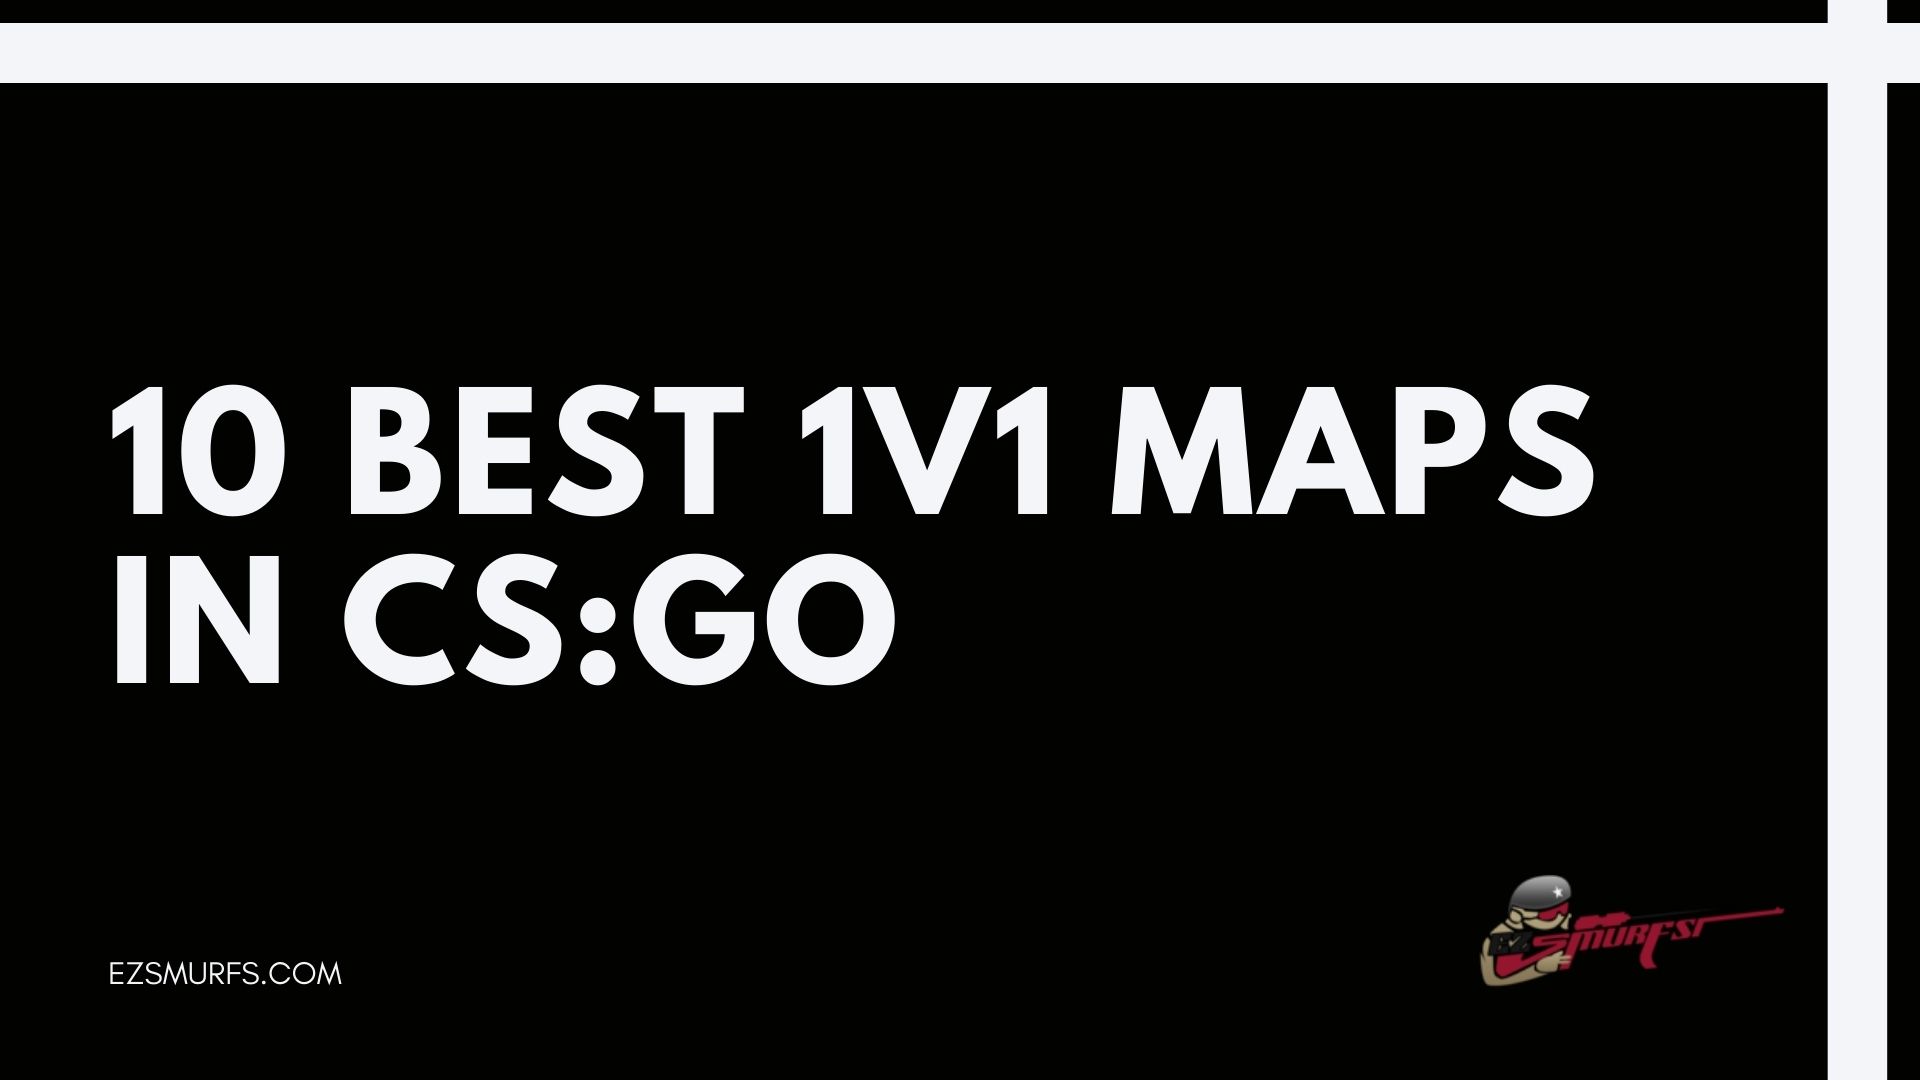 Top 10 Best 1v1 Maps In Cs Go Ezsmurfs